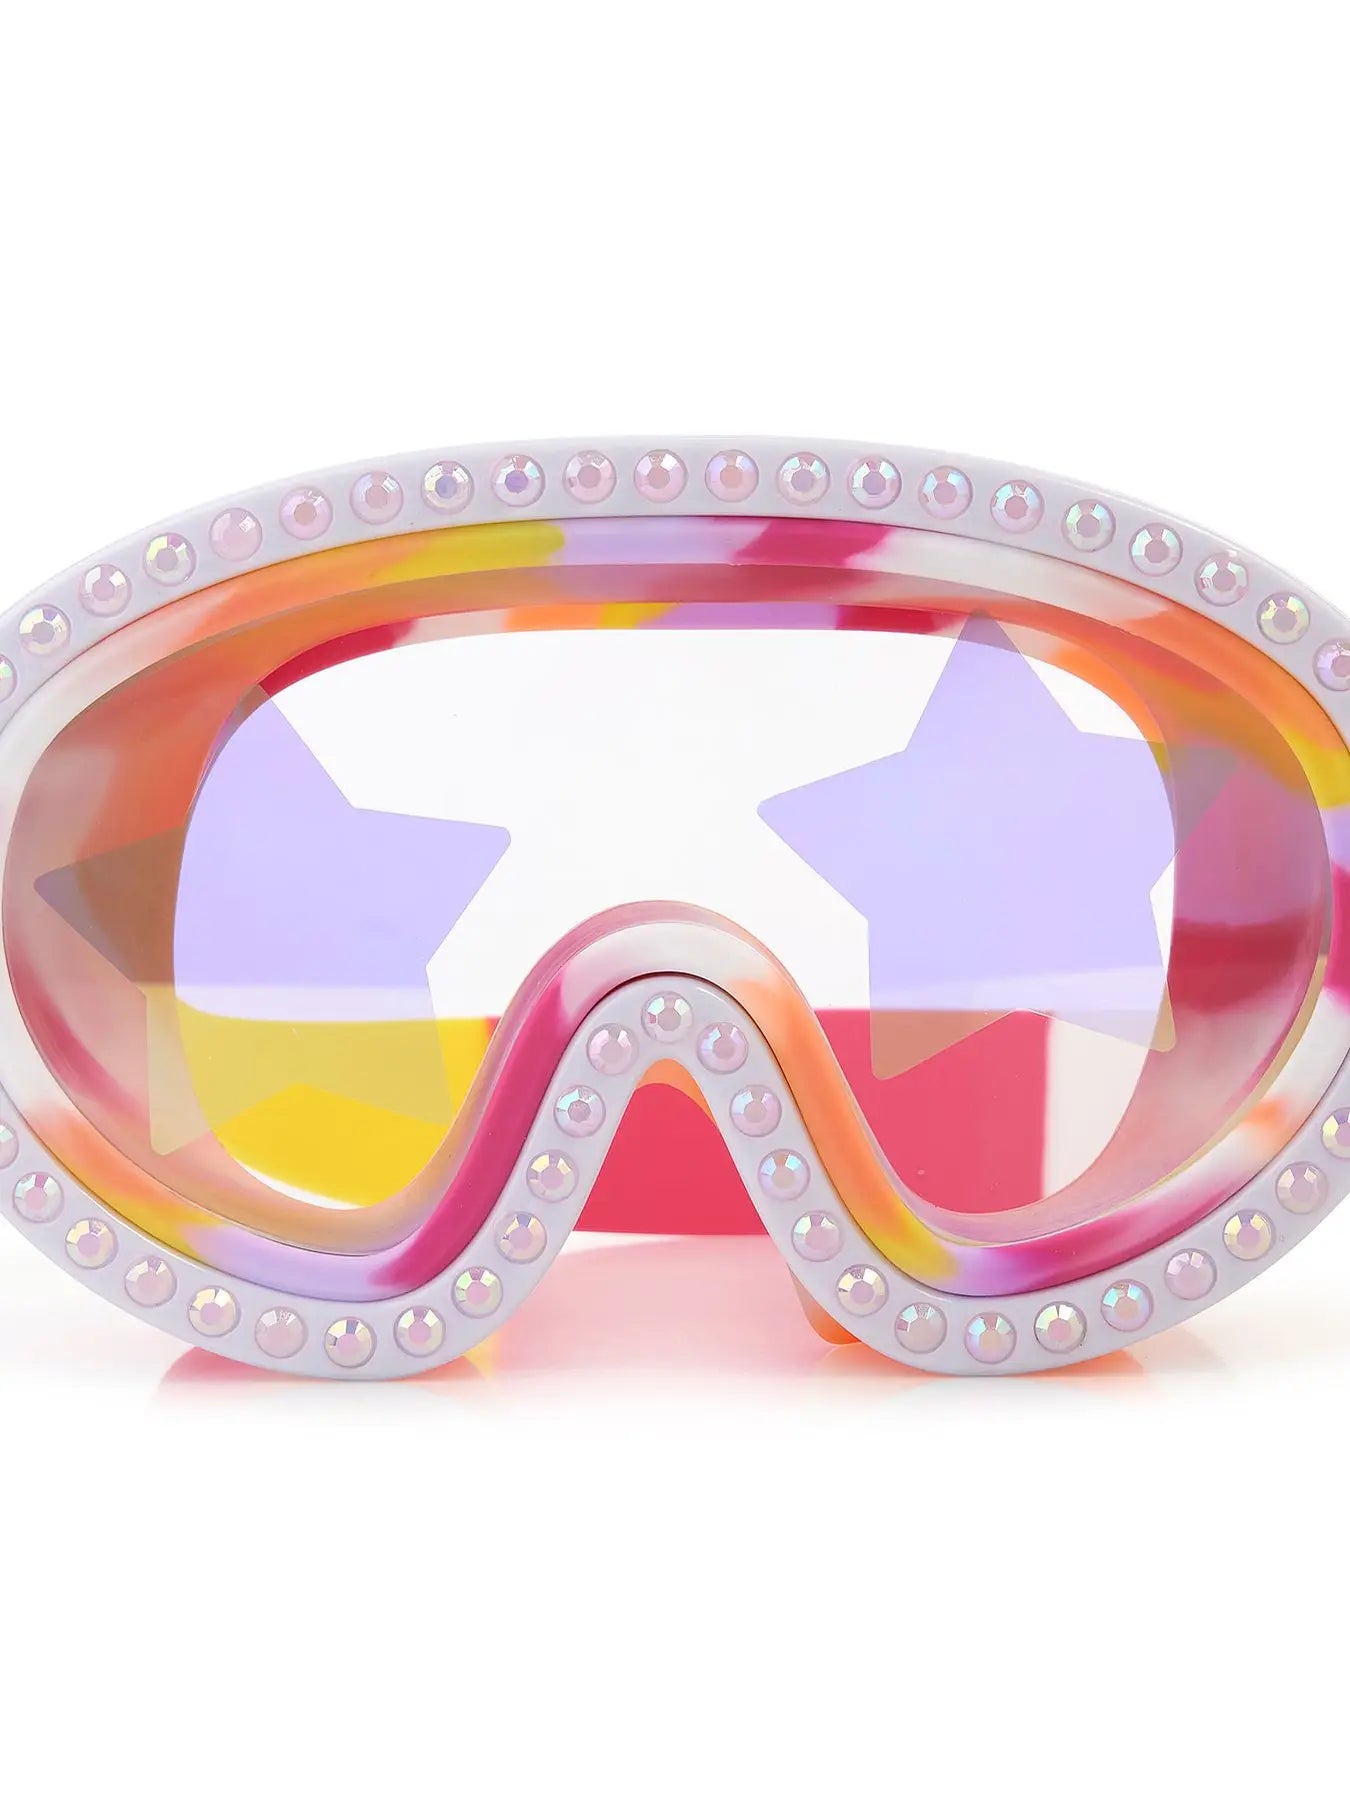 Shining Star Swim Goggles